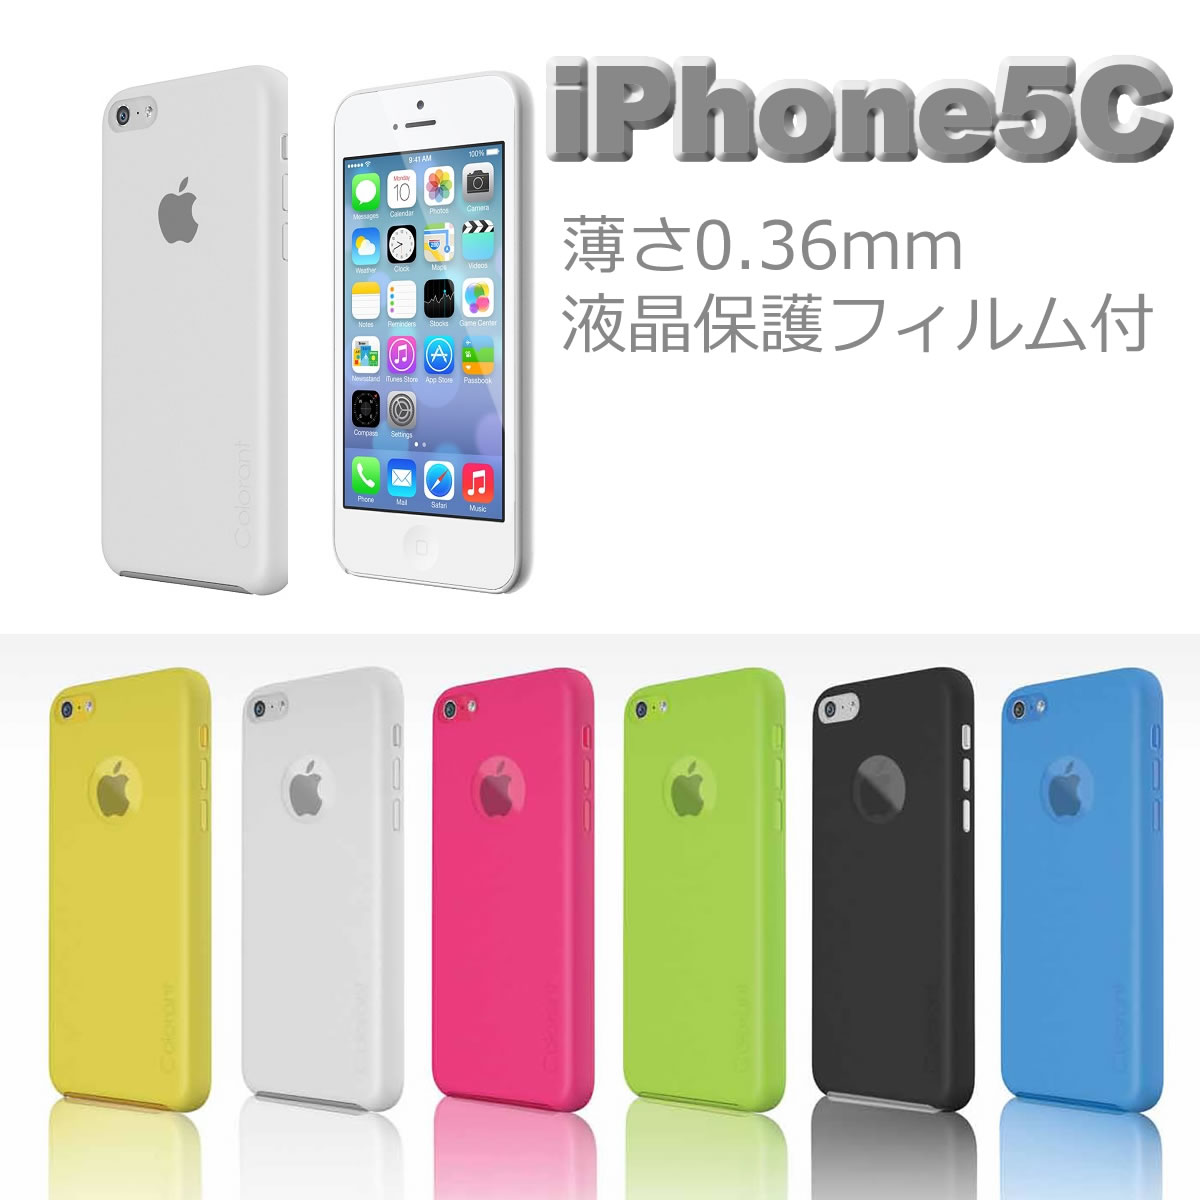 iPhone5c ケース color shell caseiPhone5c カバー カラーケース アイフォン5c スマホ アイフォーン5c iphone5c カバー カラー 保護フィルム